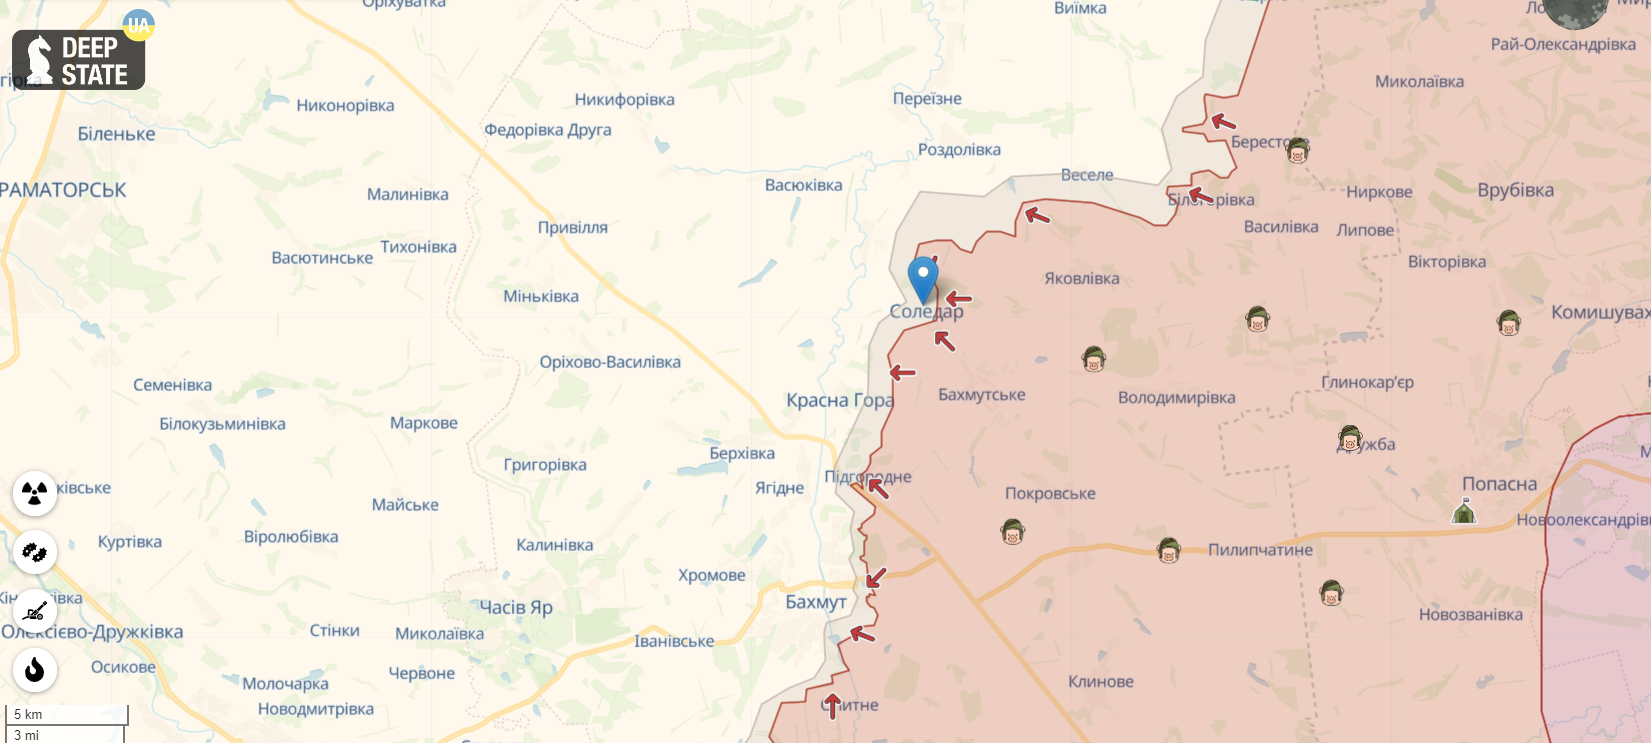 На некоторых участках наступают ВСУ, на некоторых – враг: в Минобороны рассказали о ситуации на востоке Украины